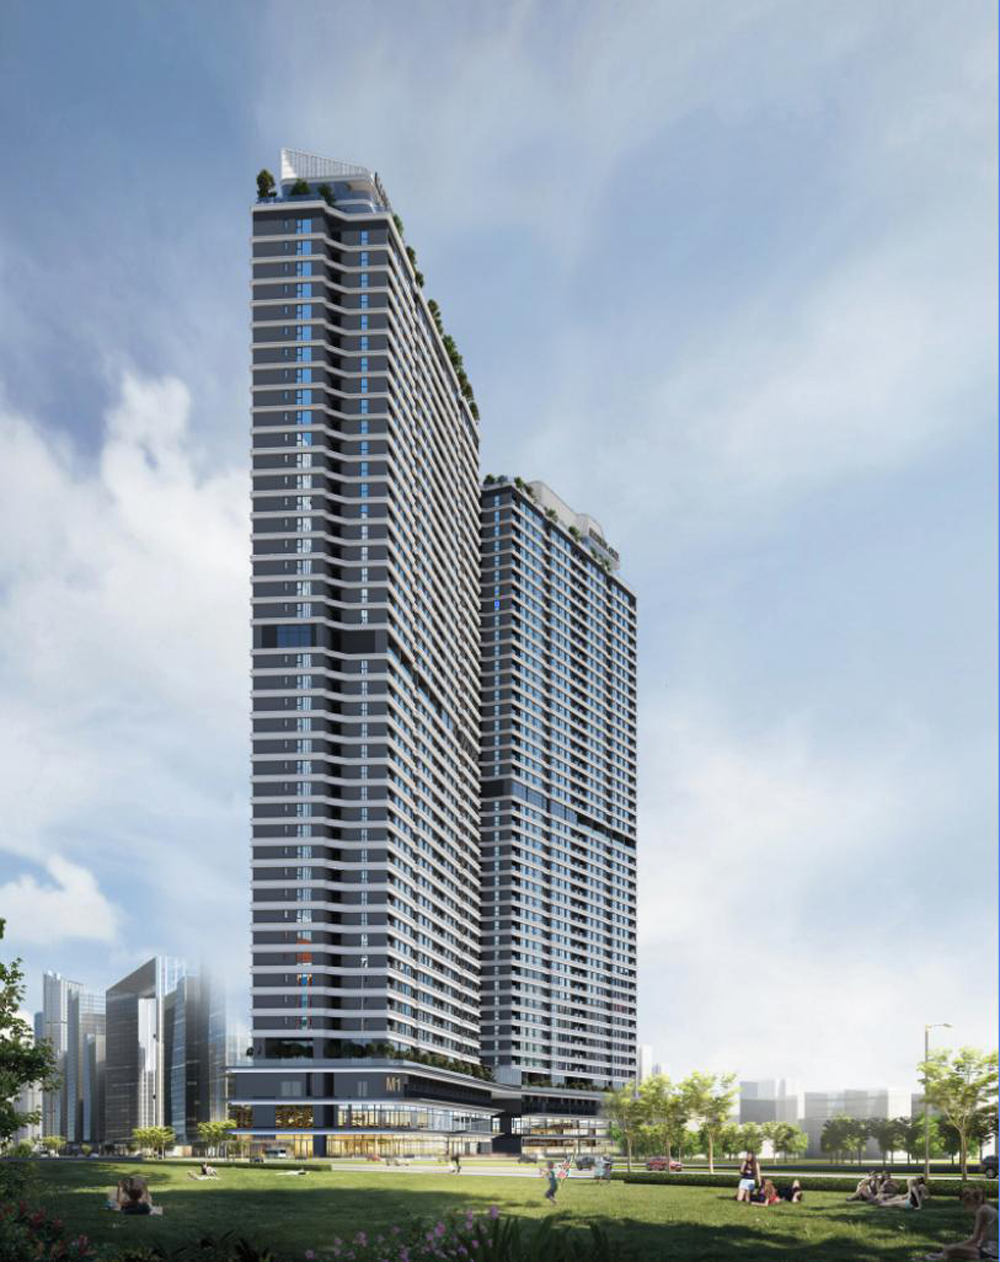 Tòa tháp đôi căn hộ 44 tầng thuộc khu hỗn hợp HH2 sẽ đưa ra thị trường hơn 700 căn hộ cao cấp